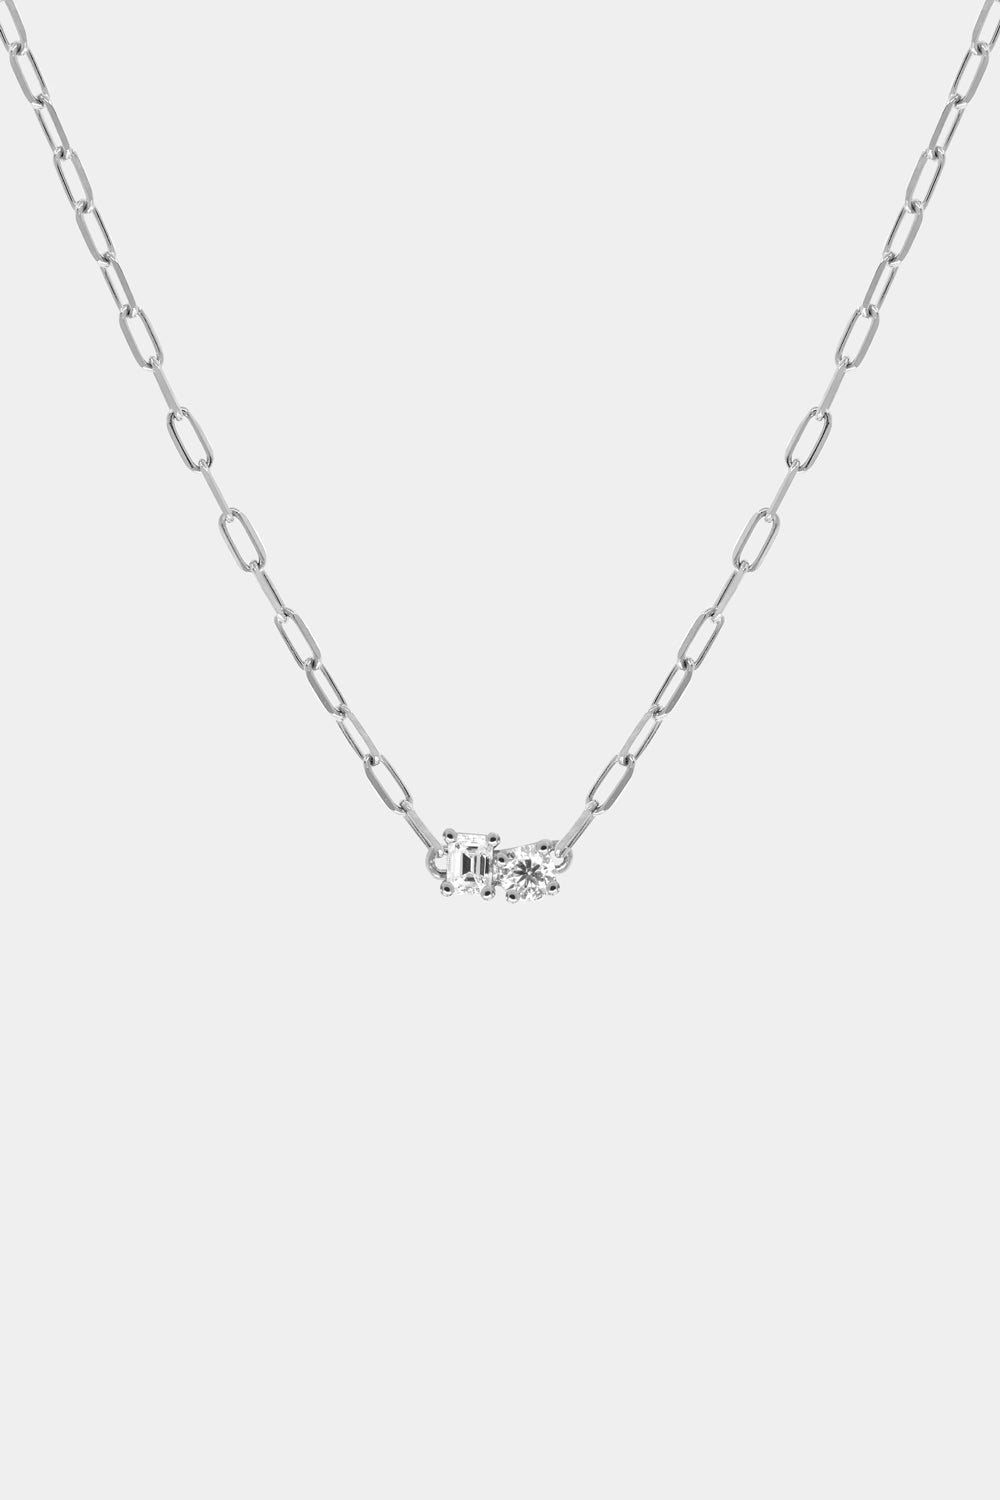 Emerald and Round Diamond Toi Et Moi Necklace | 18K White Gold